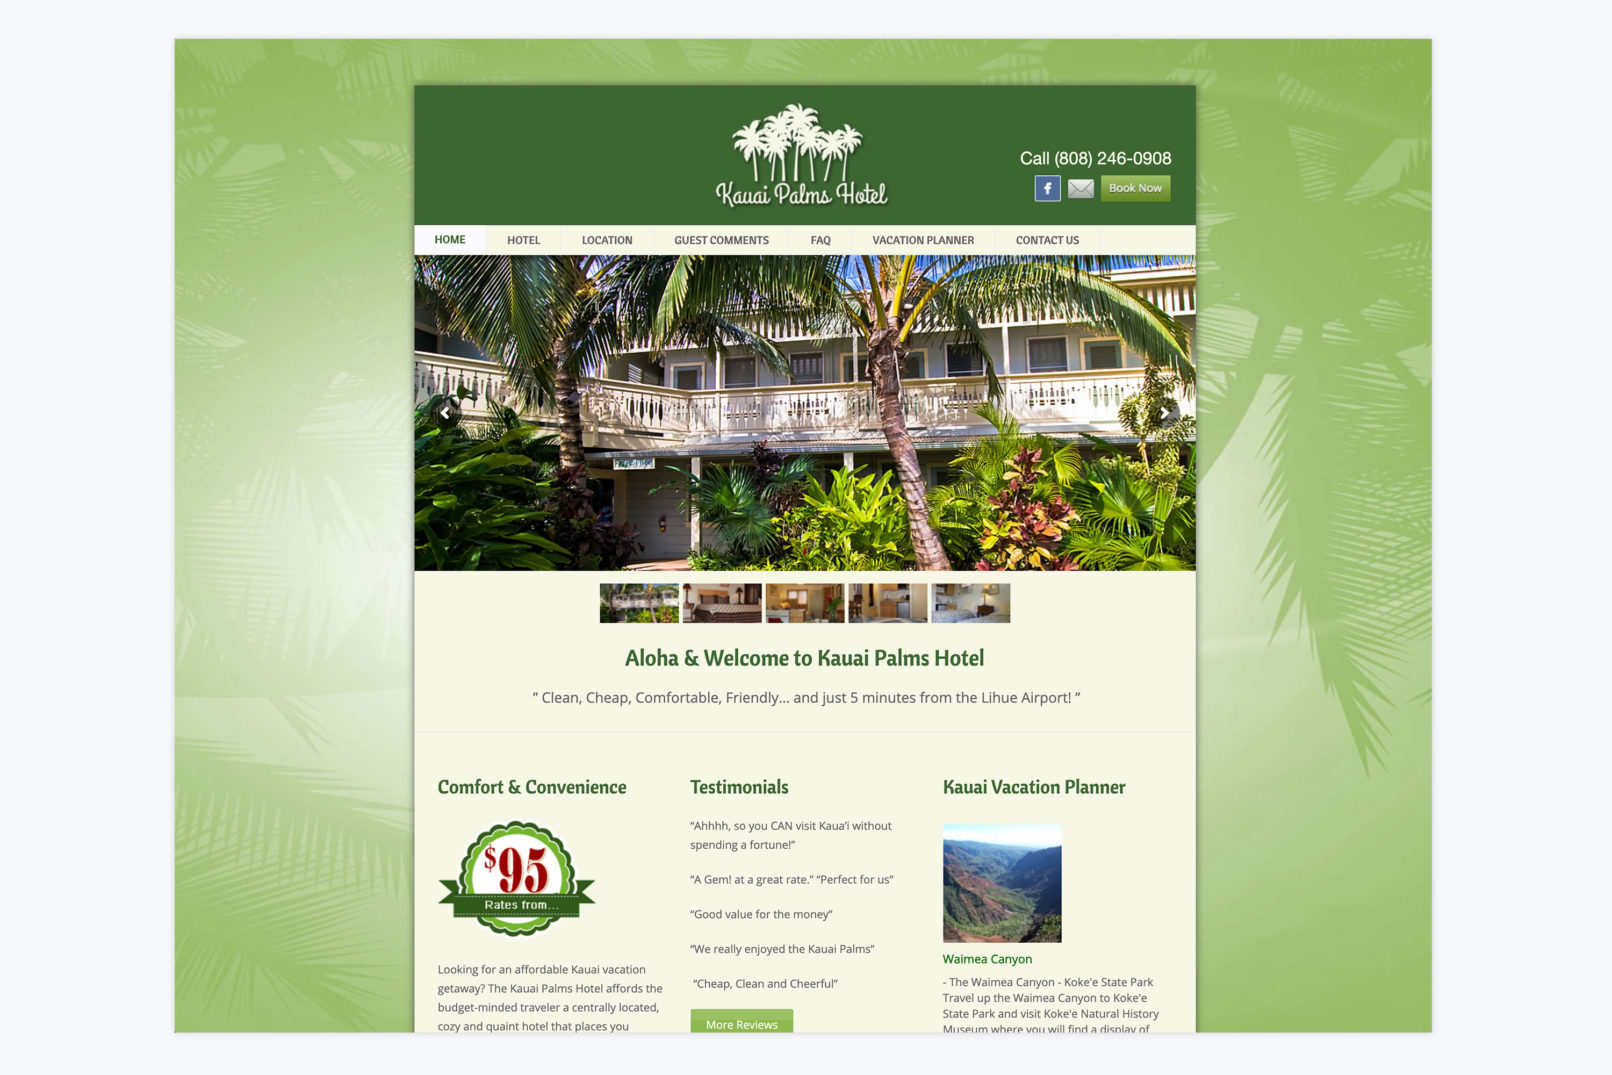 kauai palms hotel website design